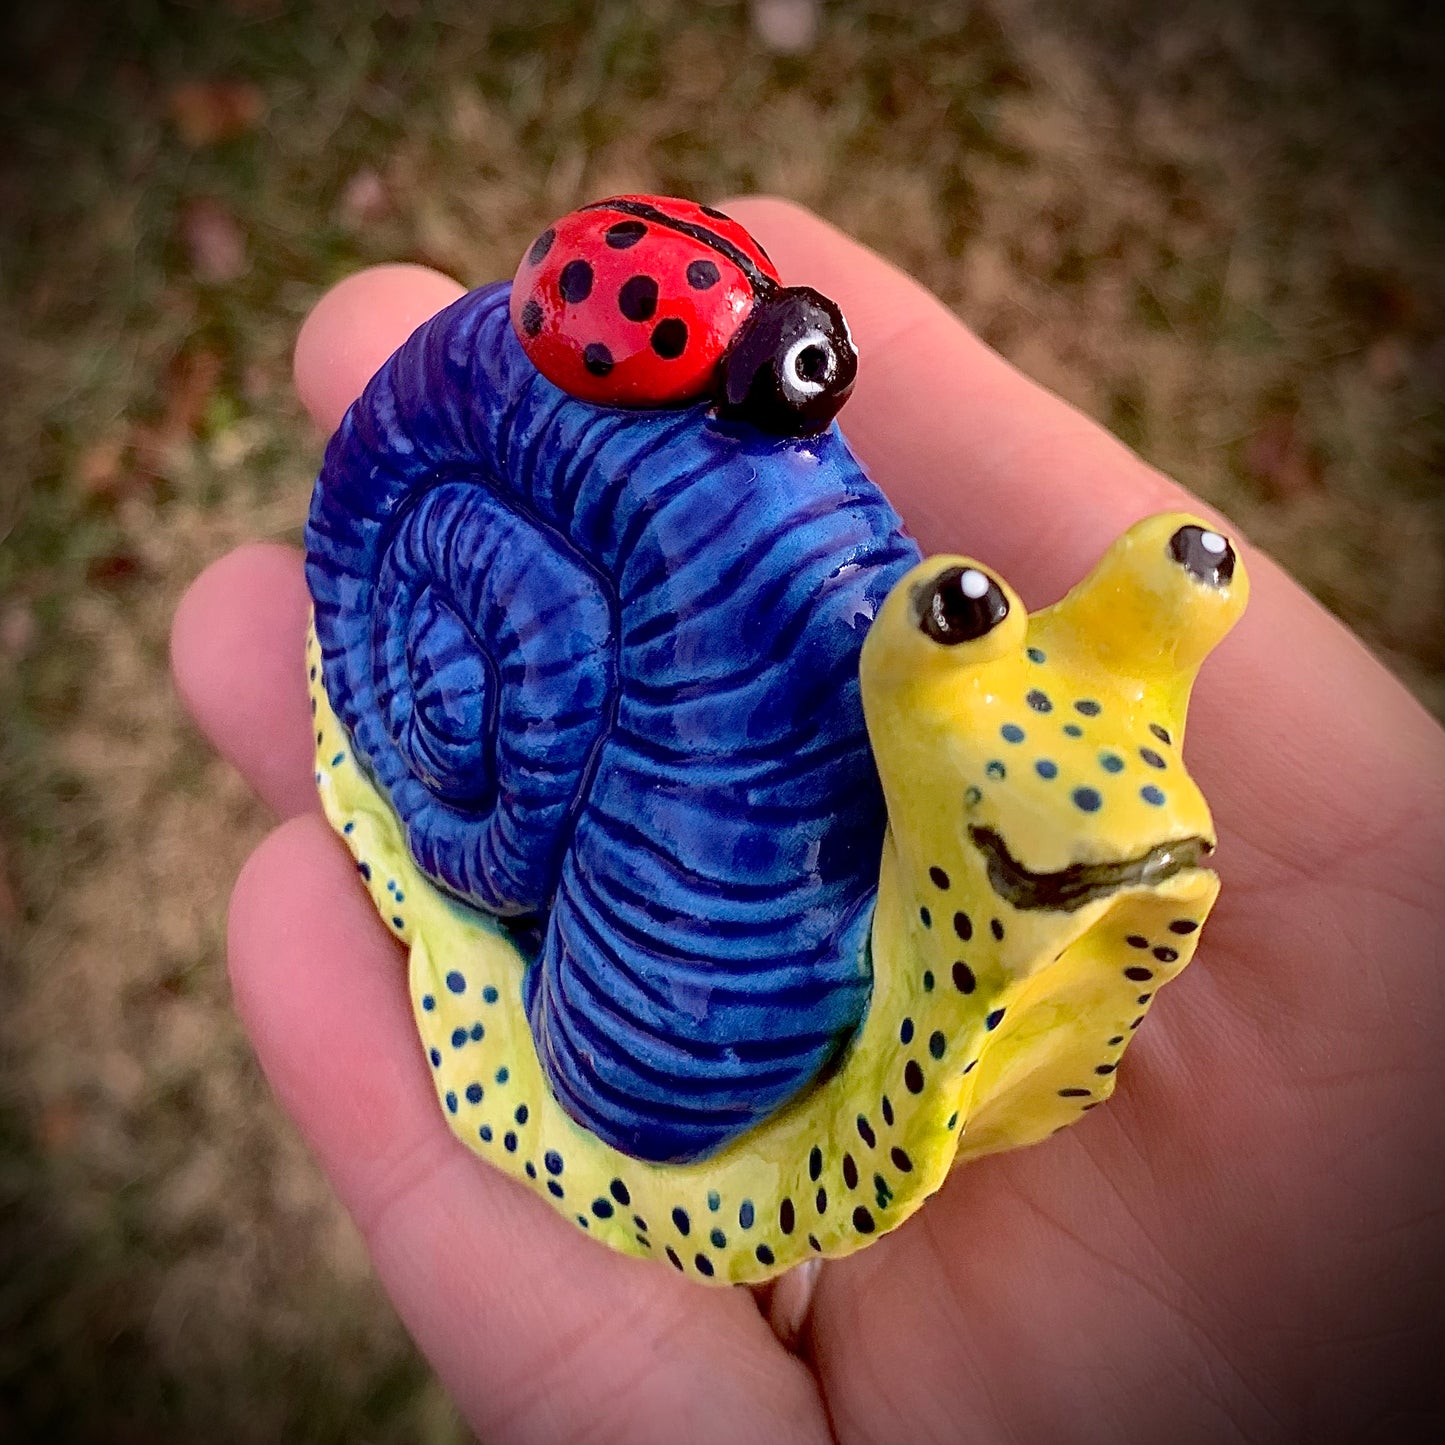 Snails with Ladybug